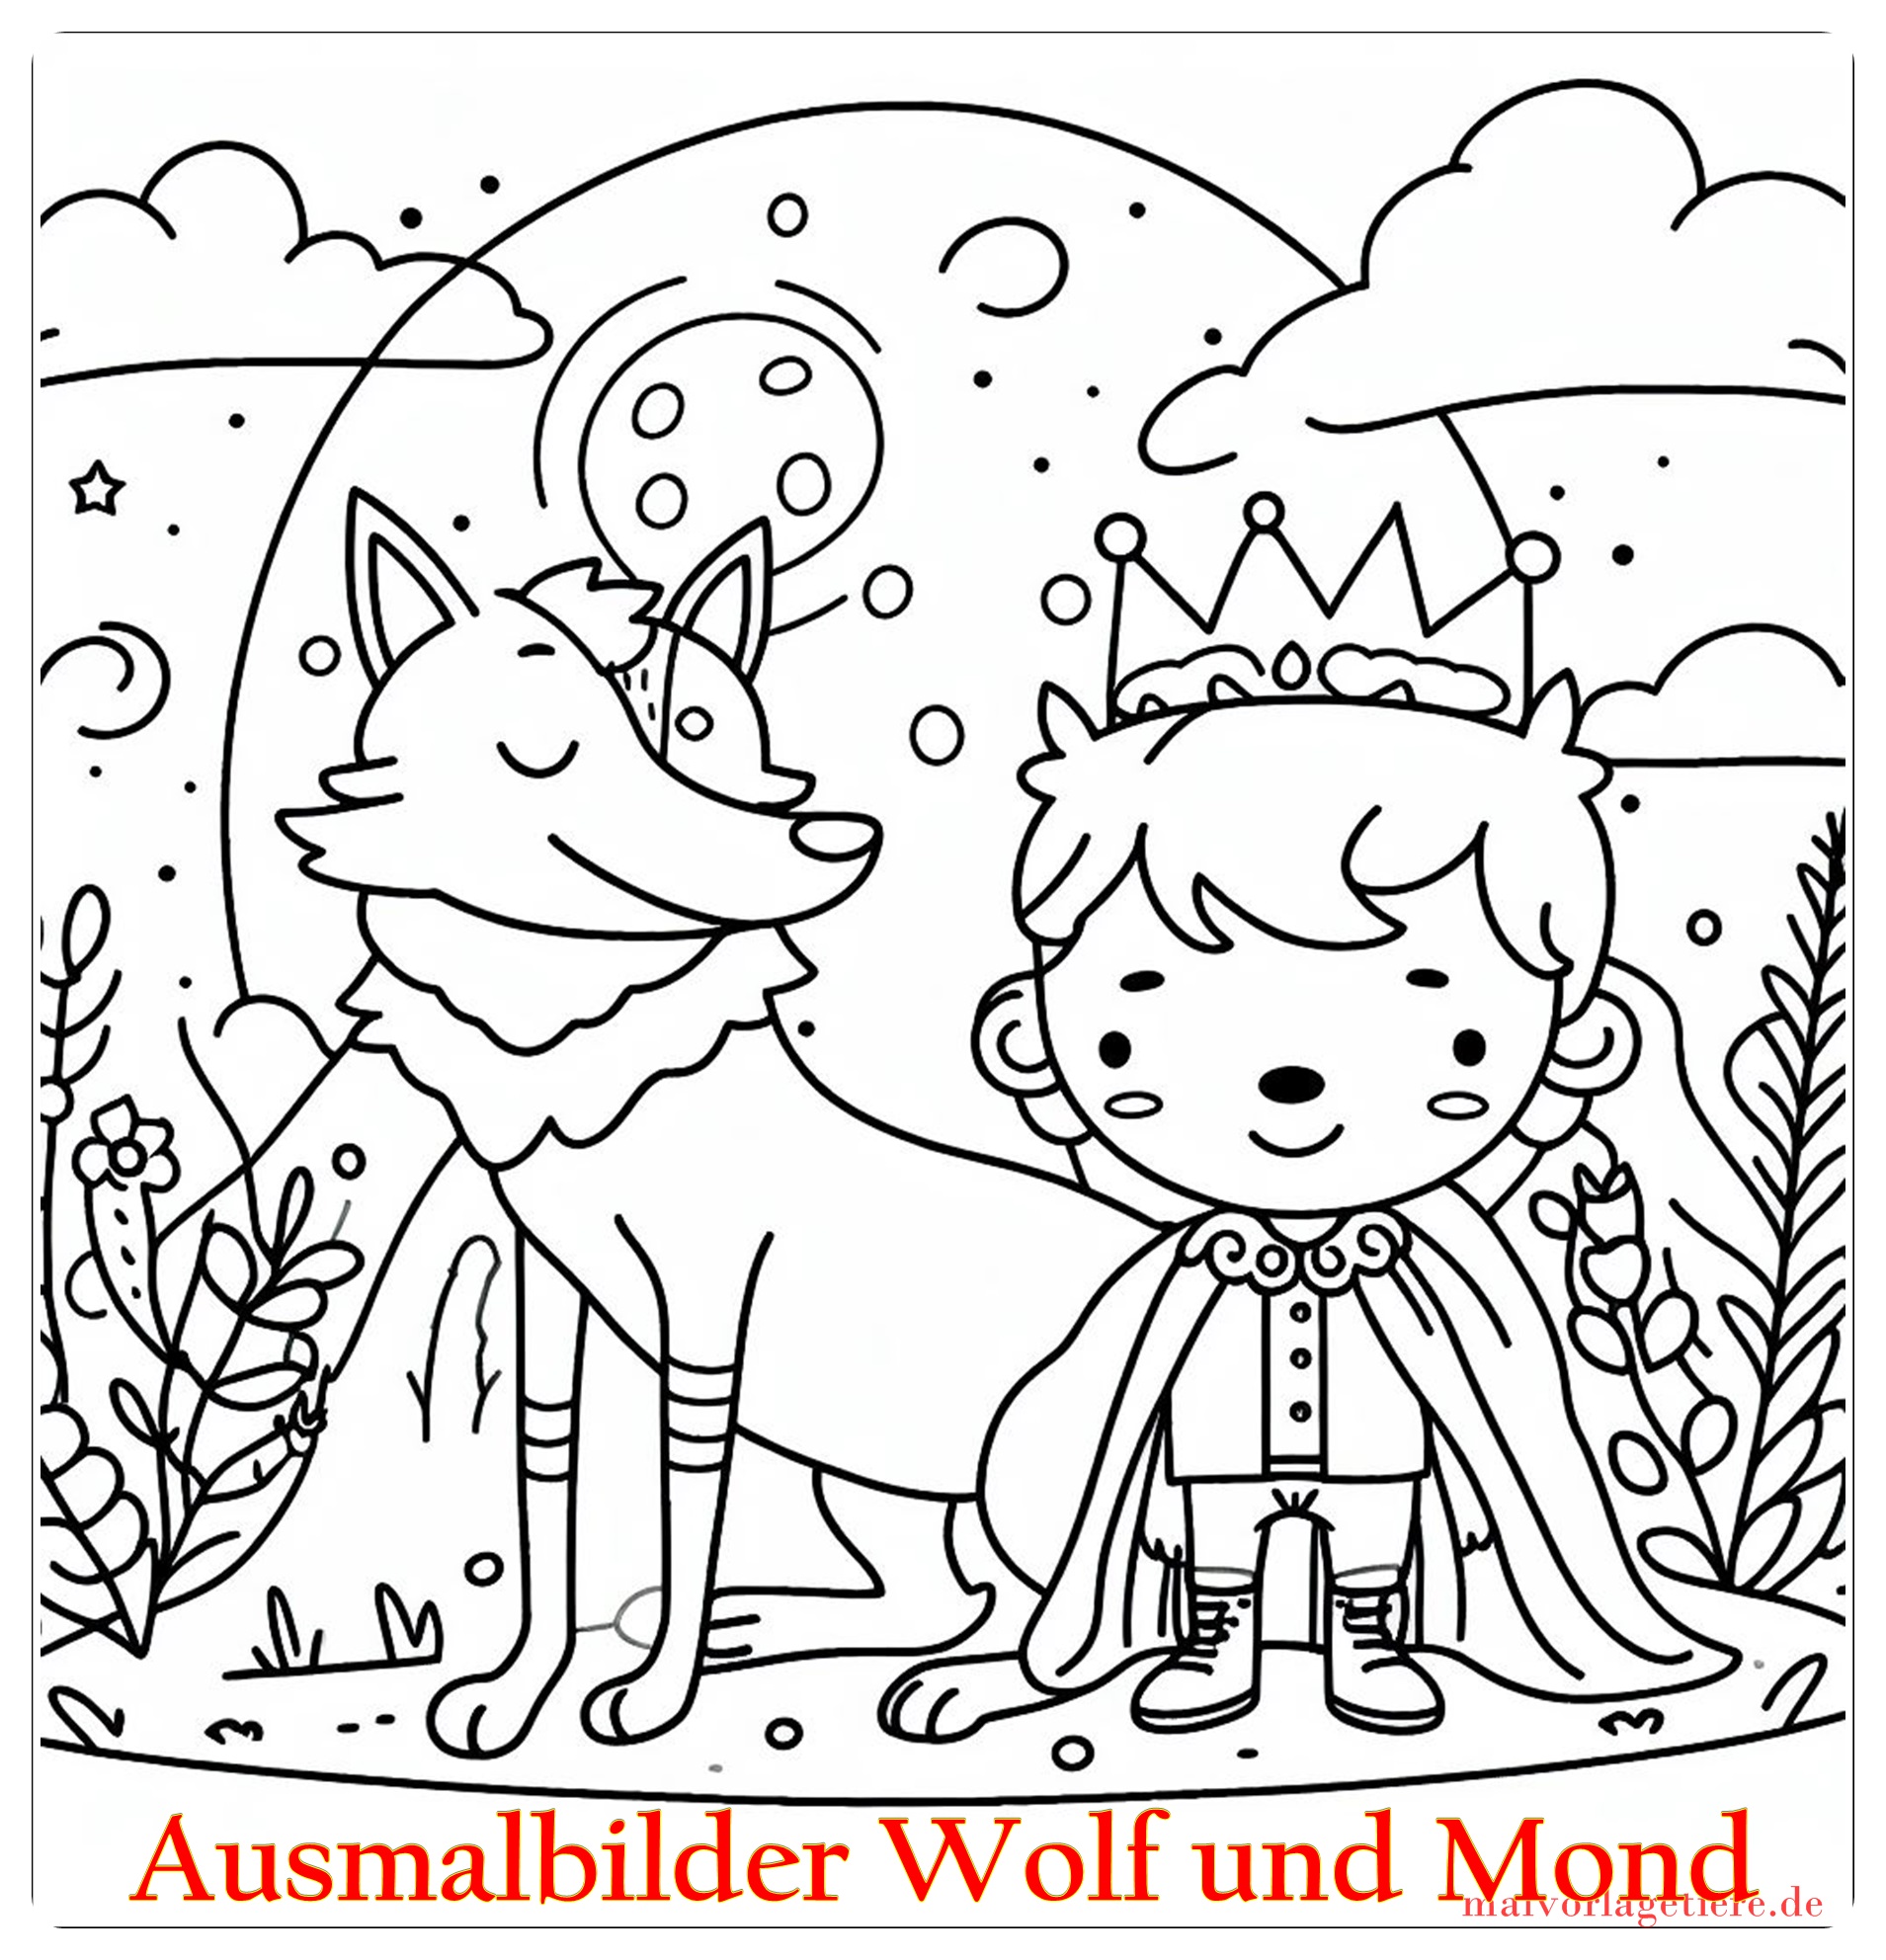 Ausmalbilder Wolf und Mond 06 by malvorlagetiere